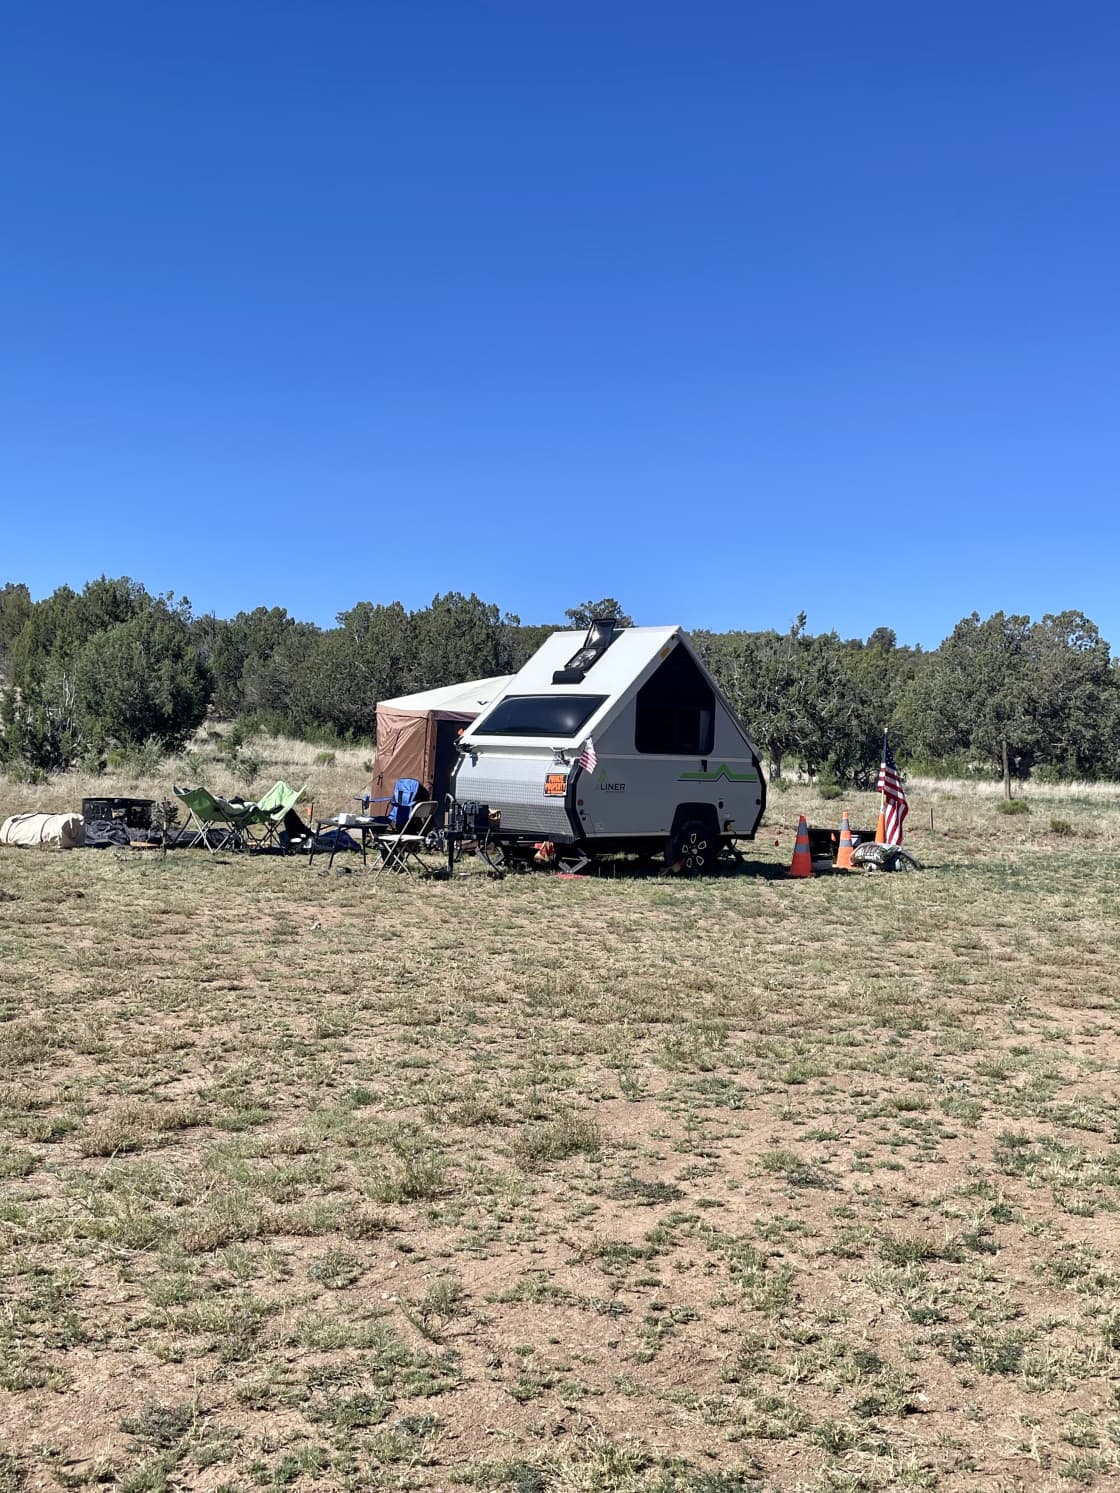 Camping near Seligman, AZ!